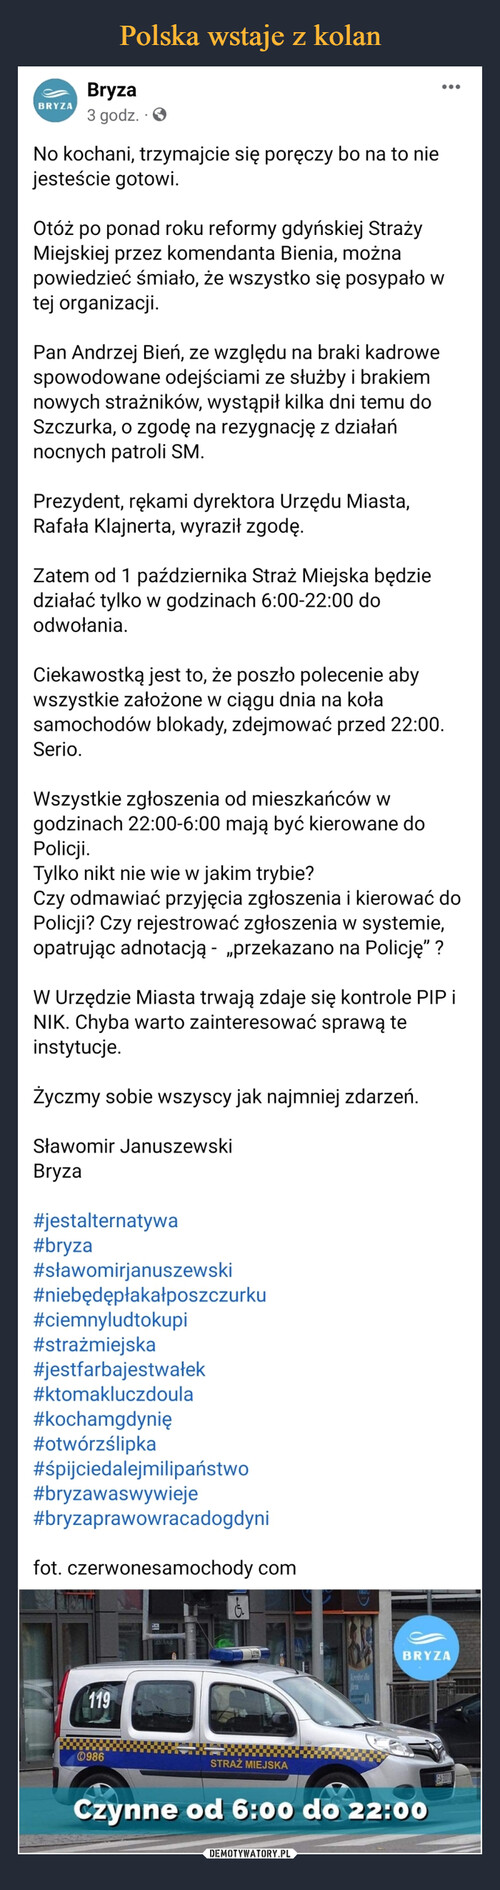 Polska wstaje z kolan